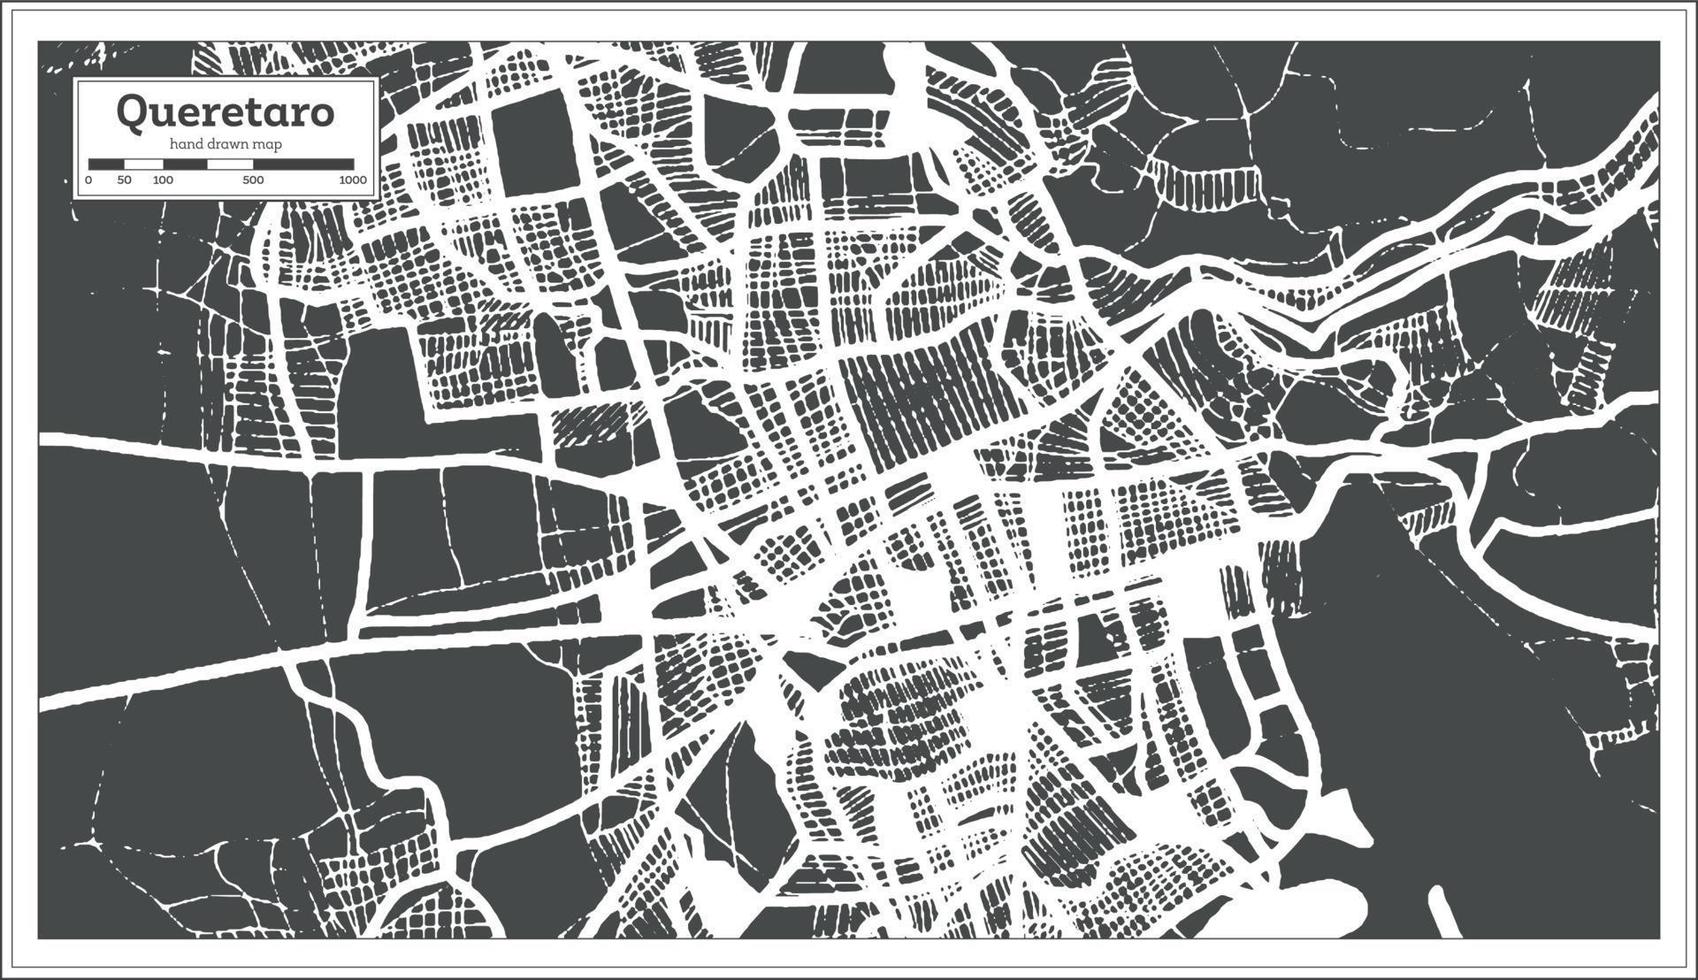 plan de la ville de queretaro mexique dans un style rétro. carte muette. vecteur